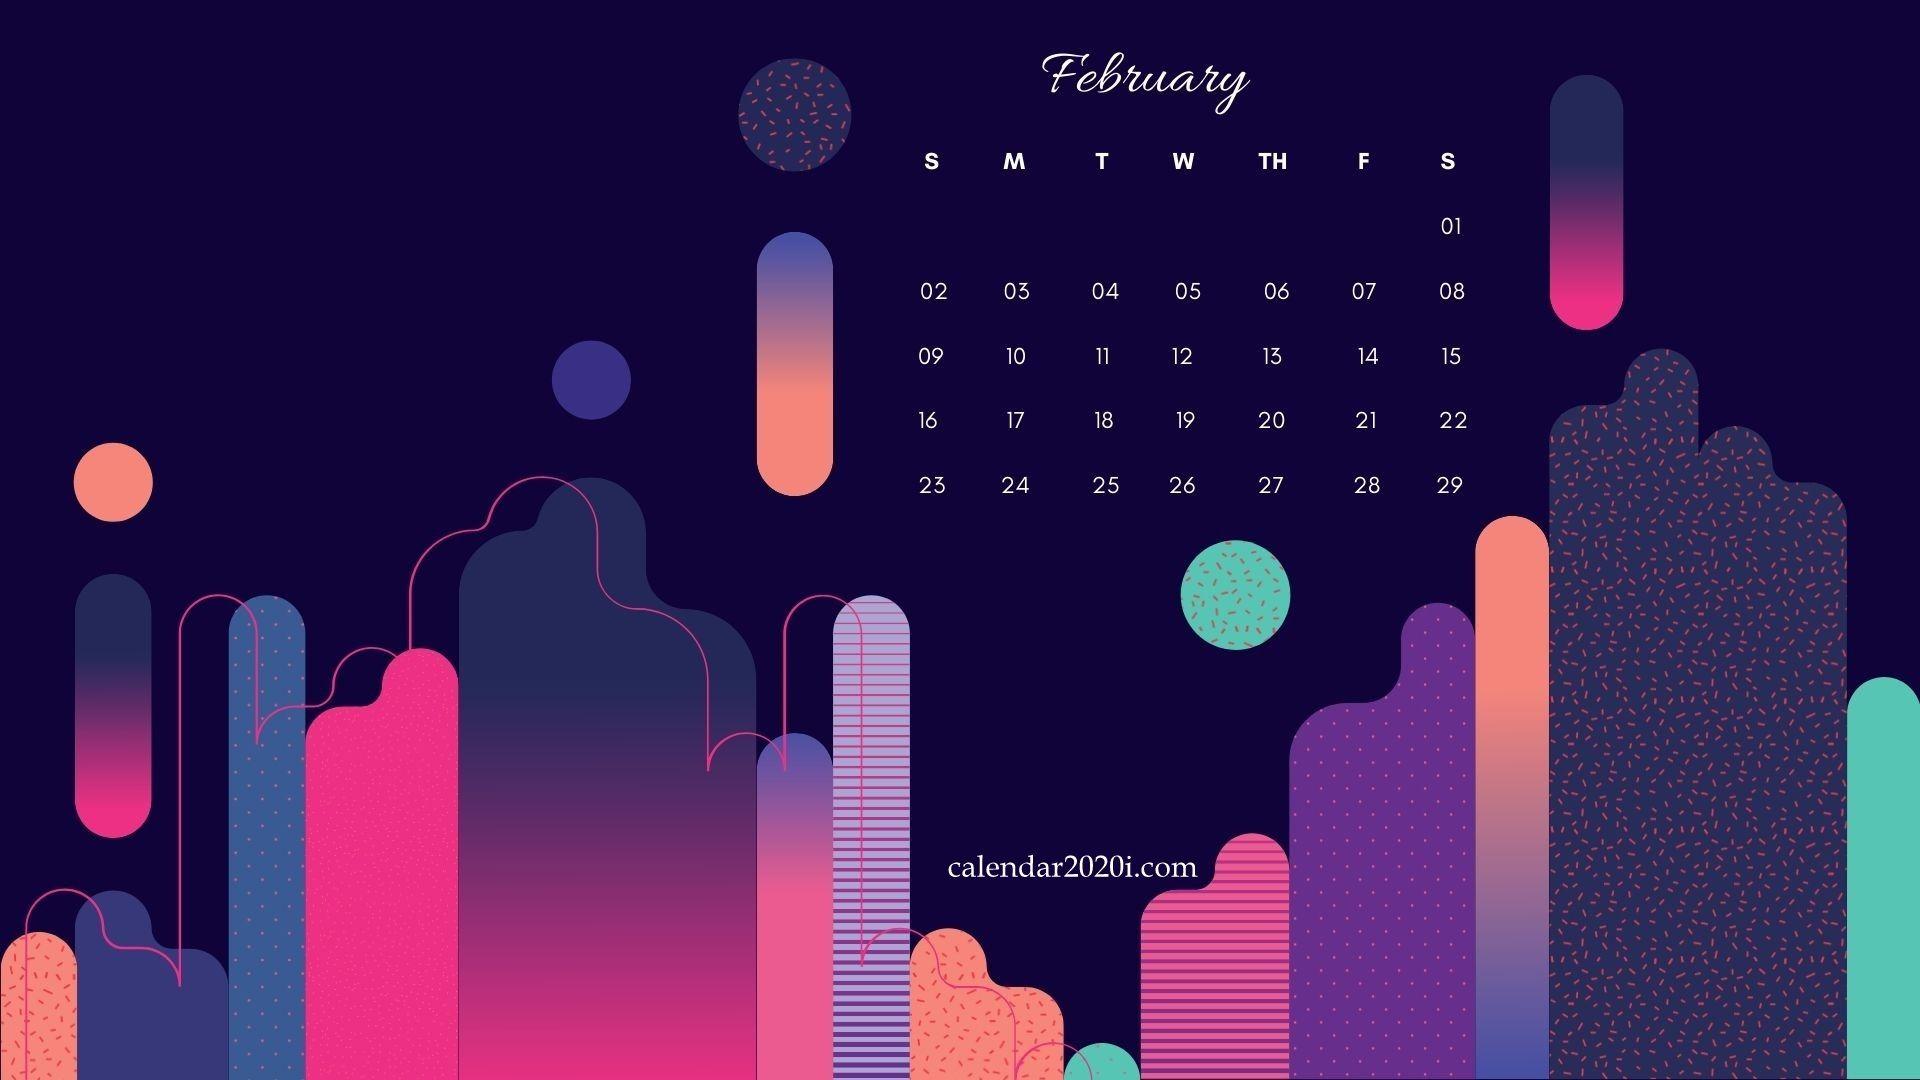 February 2020 Desktop Calendar. Calendar wallpaper